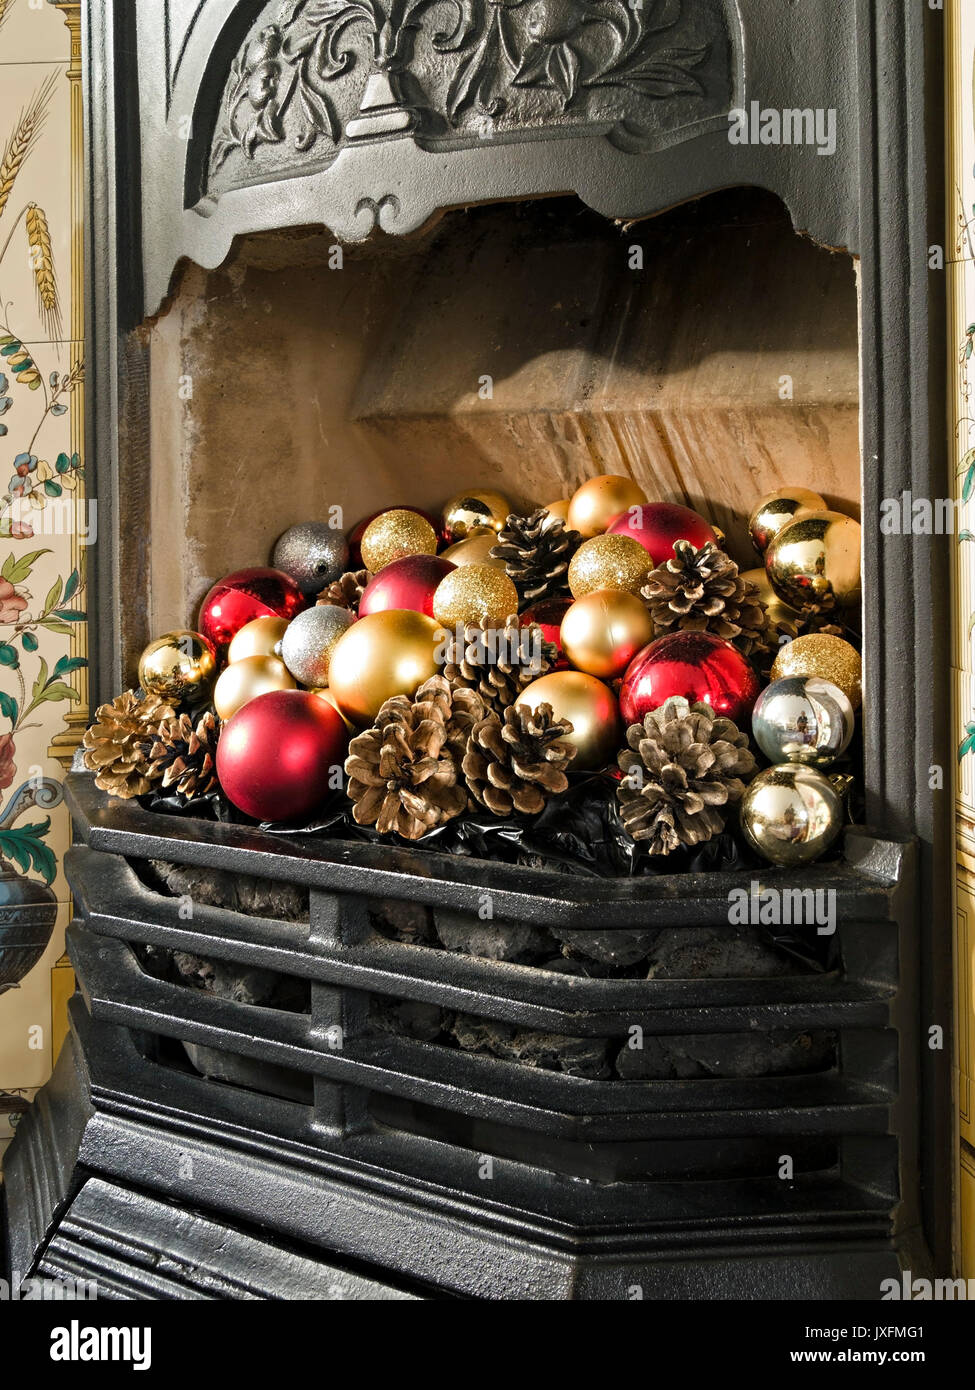 Grazioso caminetto in ghisa e griglia in stile vittoriano decorati con colorate baule natalizie e coni di abete, Inghilterra, Regno Unito Foto Stock